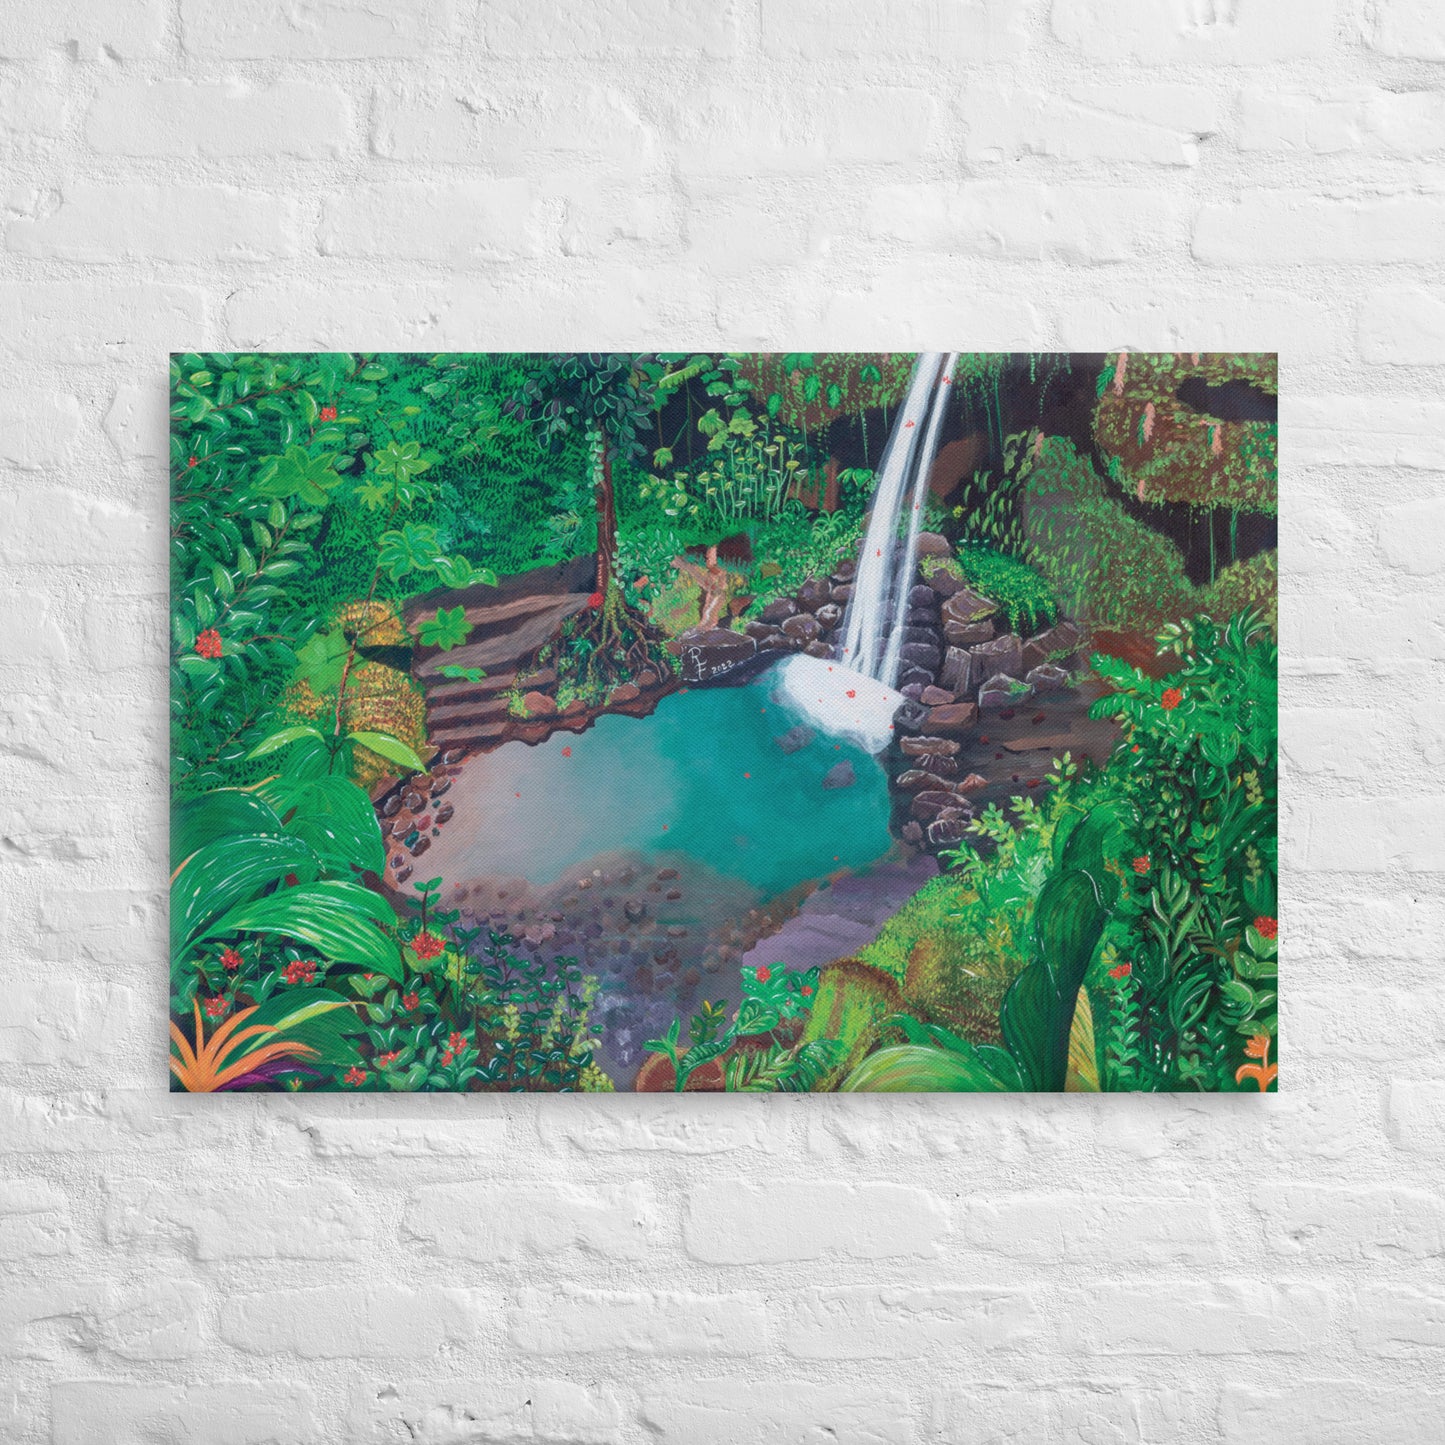 Emerald Pool Art Prints | Emerald Pool Art | ReiCreations Art